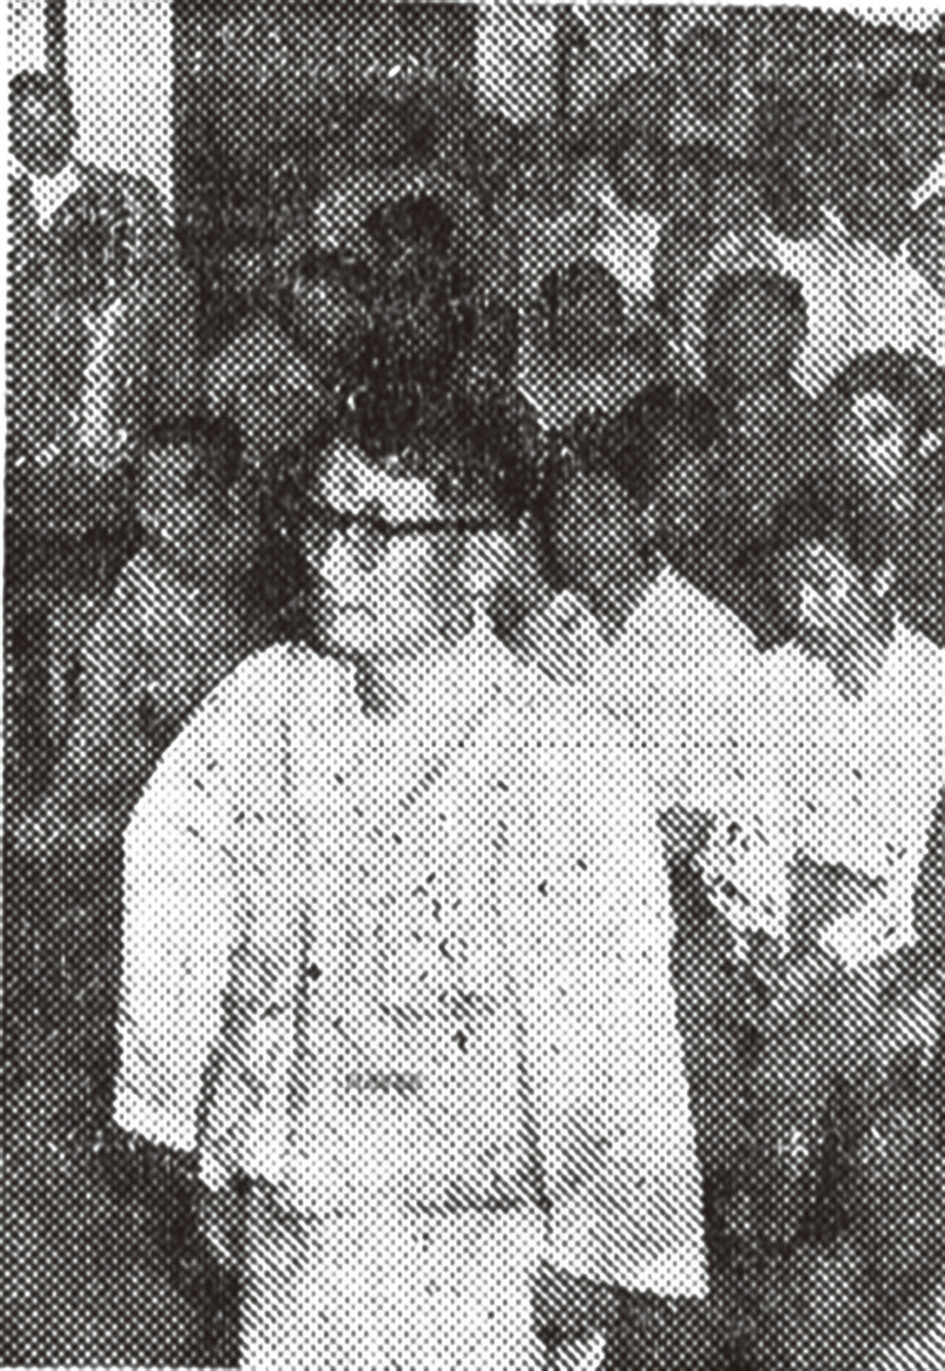 폭행, 재물손괴 등의 혐의로 법정에 선 유도회 비정통파 지도자 이성주. 1957년 6월, 서울고등법원에서 찍힌 사진이다. 임경석 제공